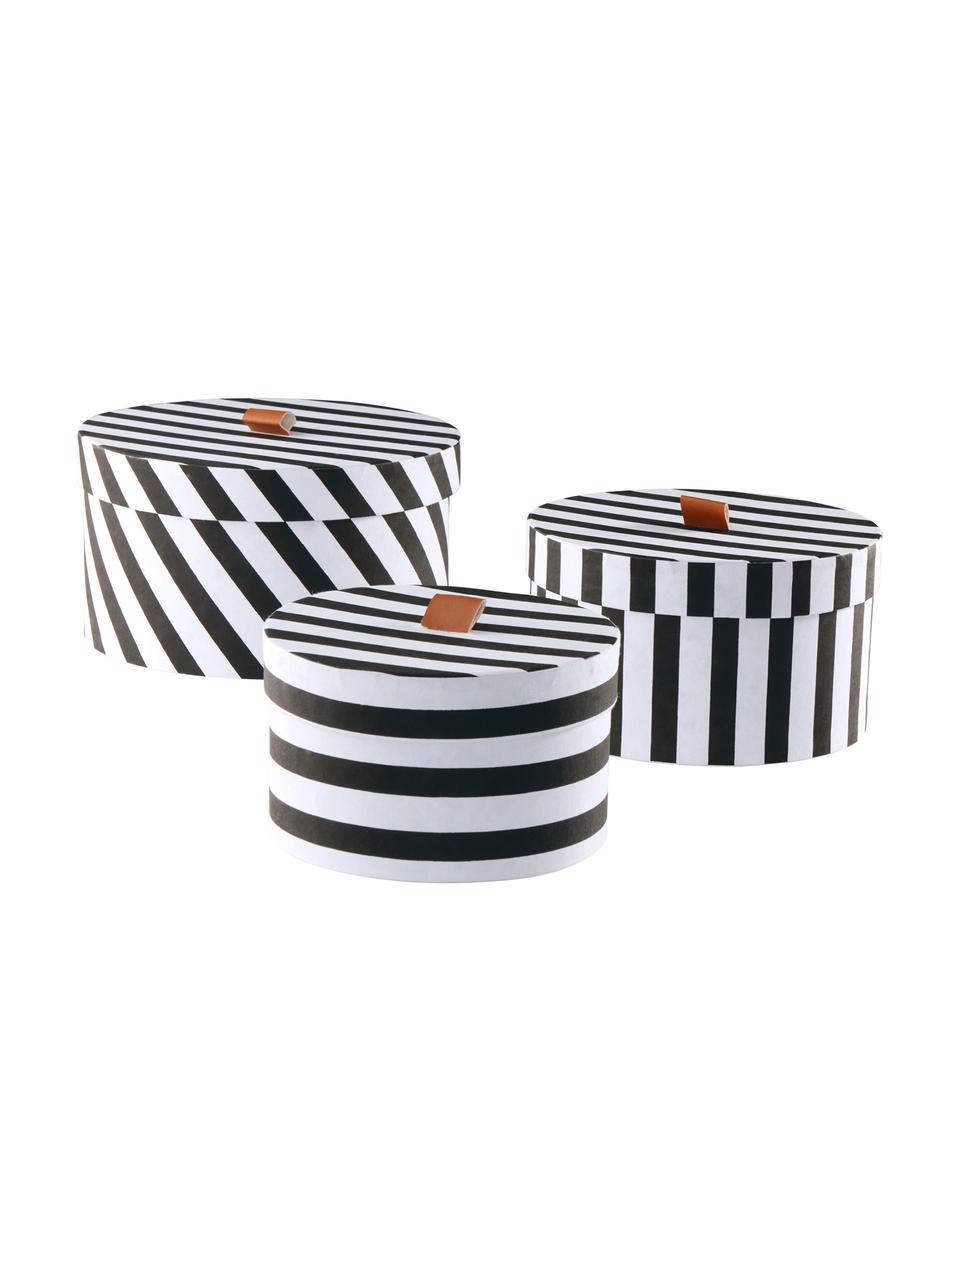 Súprava úložných škatúľ Dizzy, 3 diely, Čierna, biela, hnedá